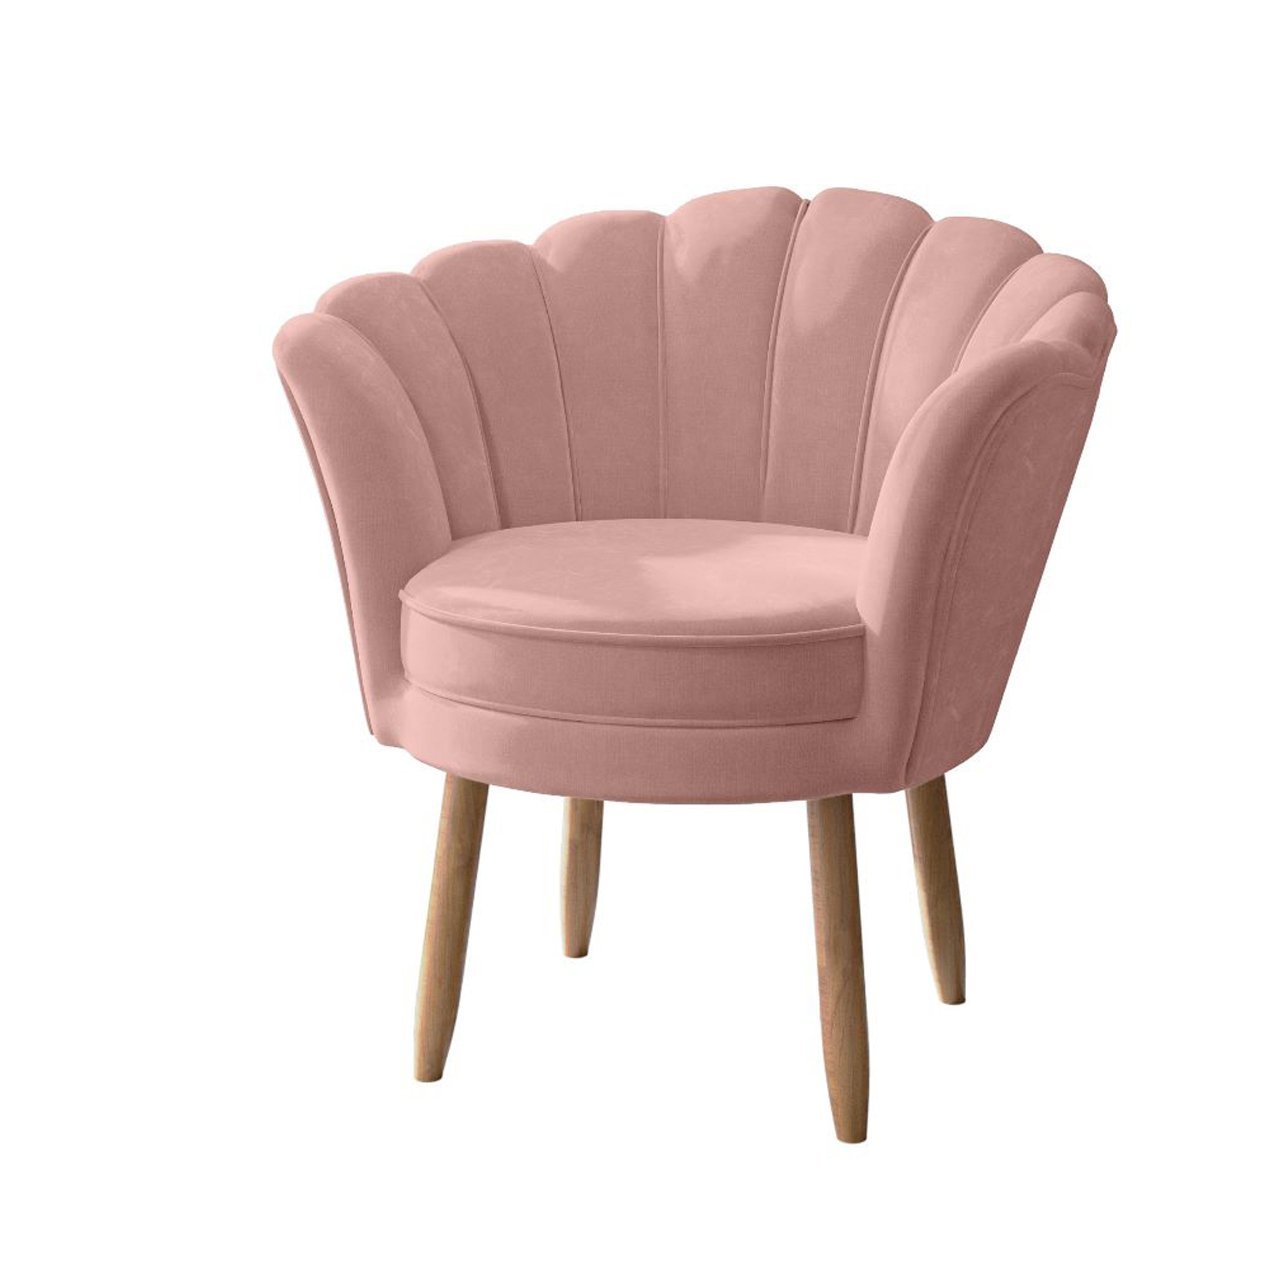 Cadeira para Recepção Clientes Poltrona Salao Lash Design Cor:rosa